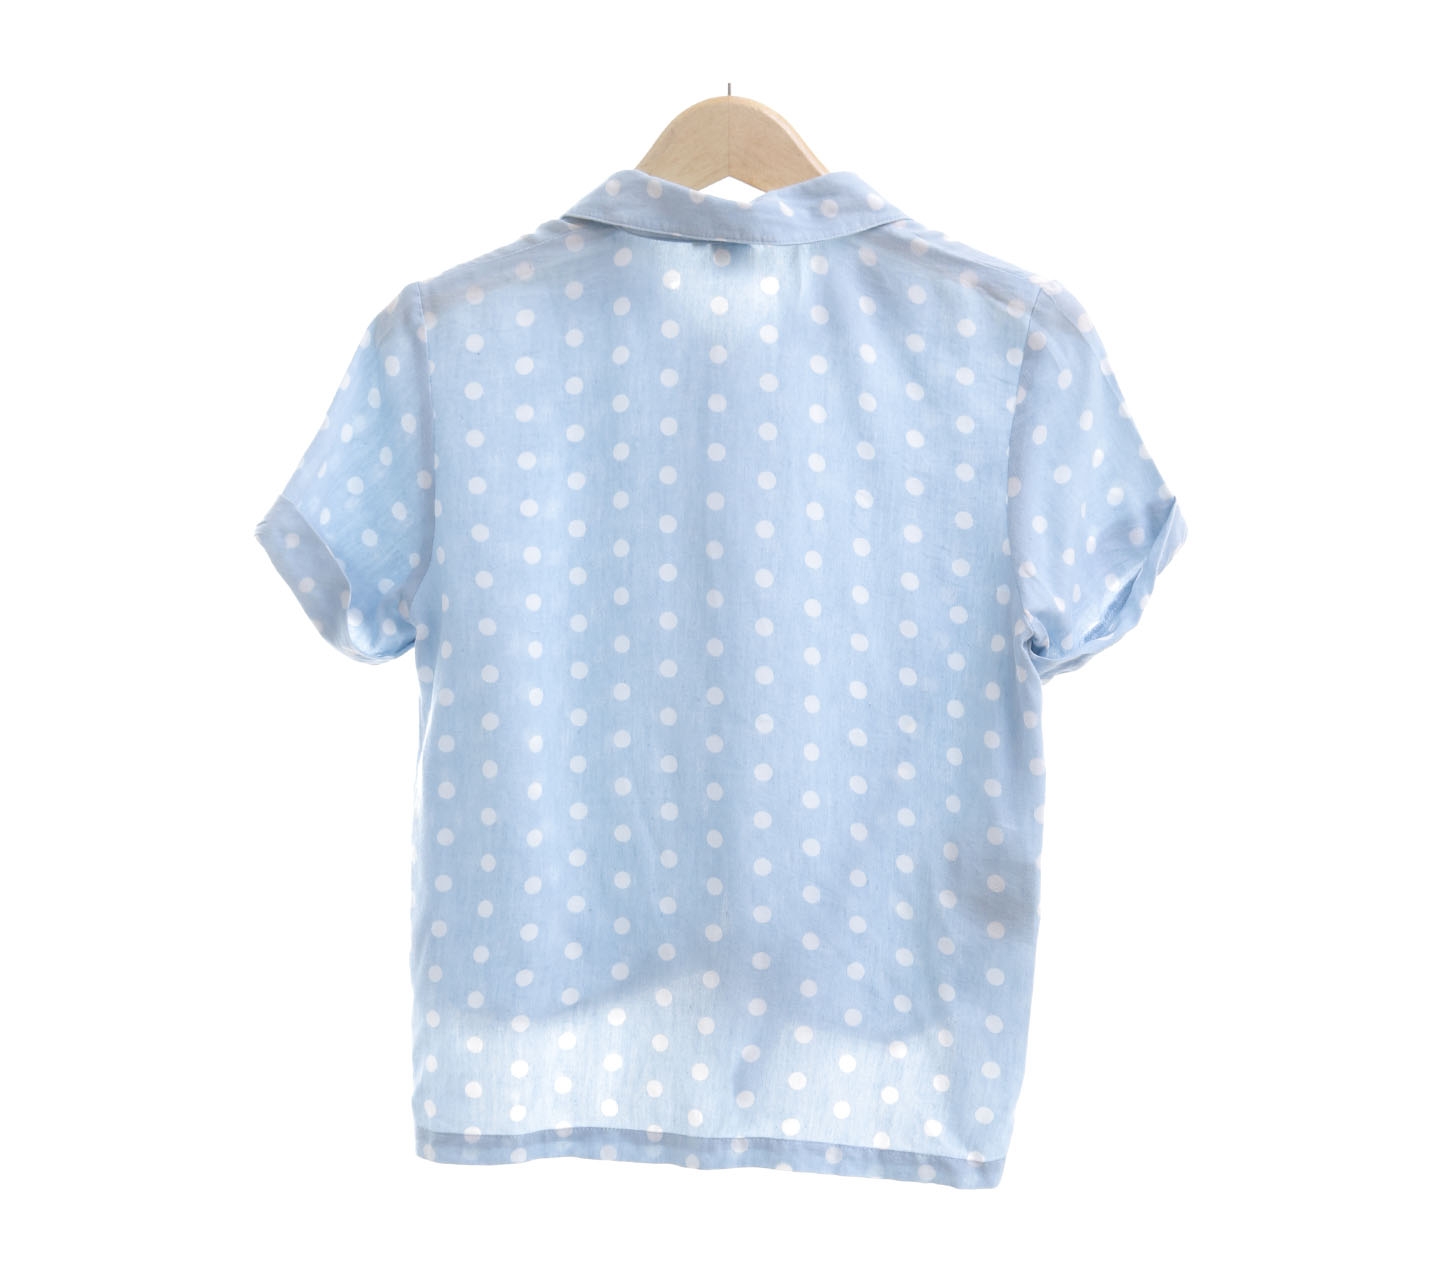 Boite Blue & White Polka Dots Shirt